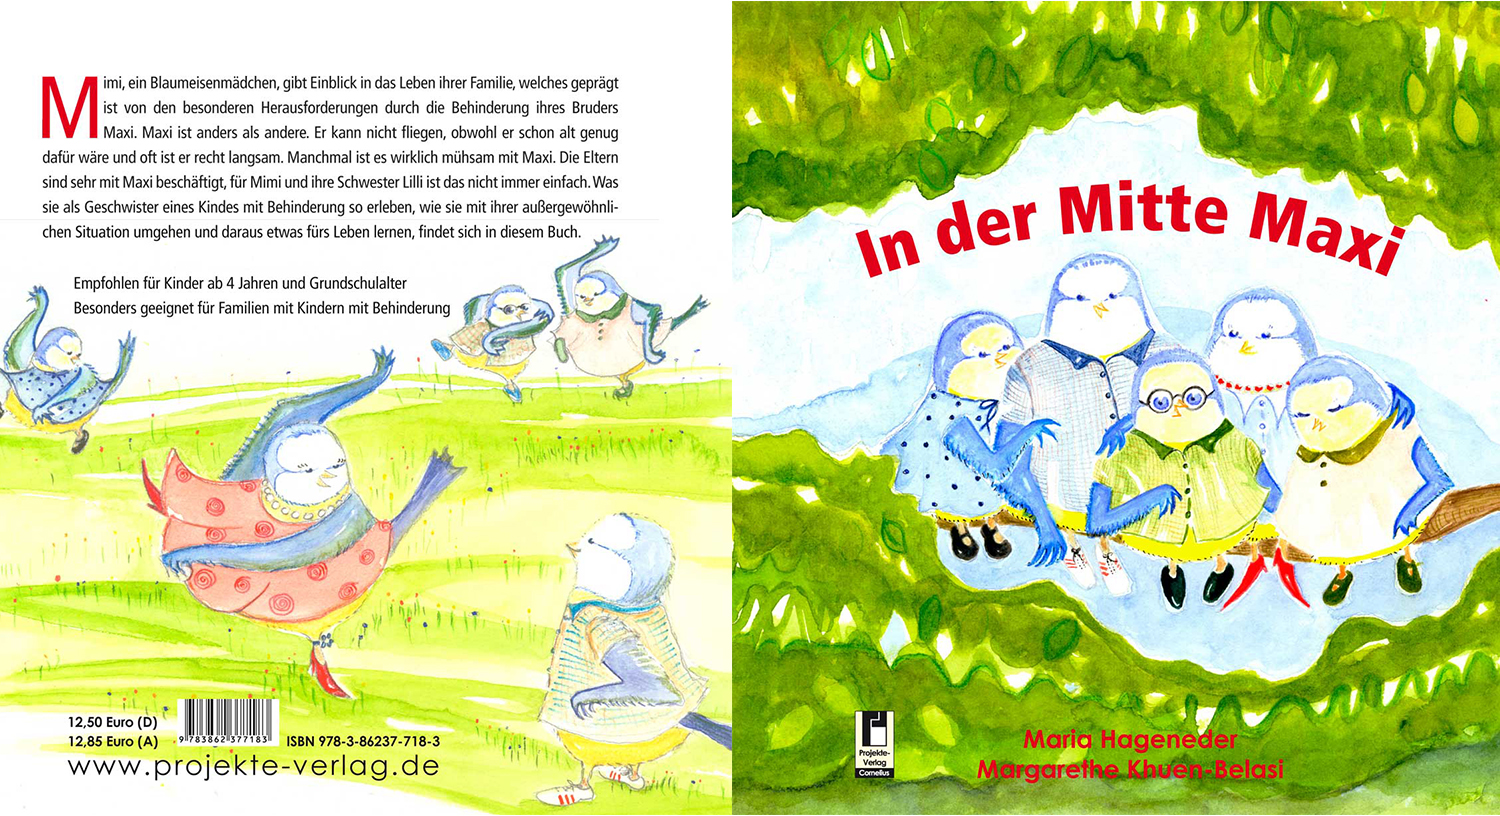 Das Cover und die Rückseite von "In der Mitte Maxi"